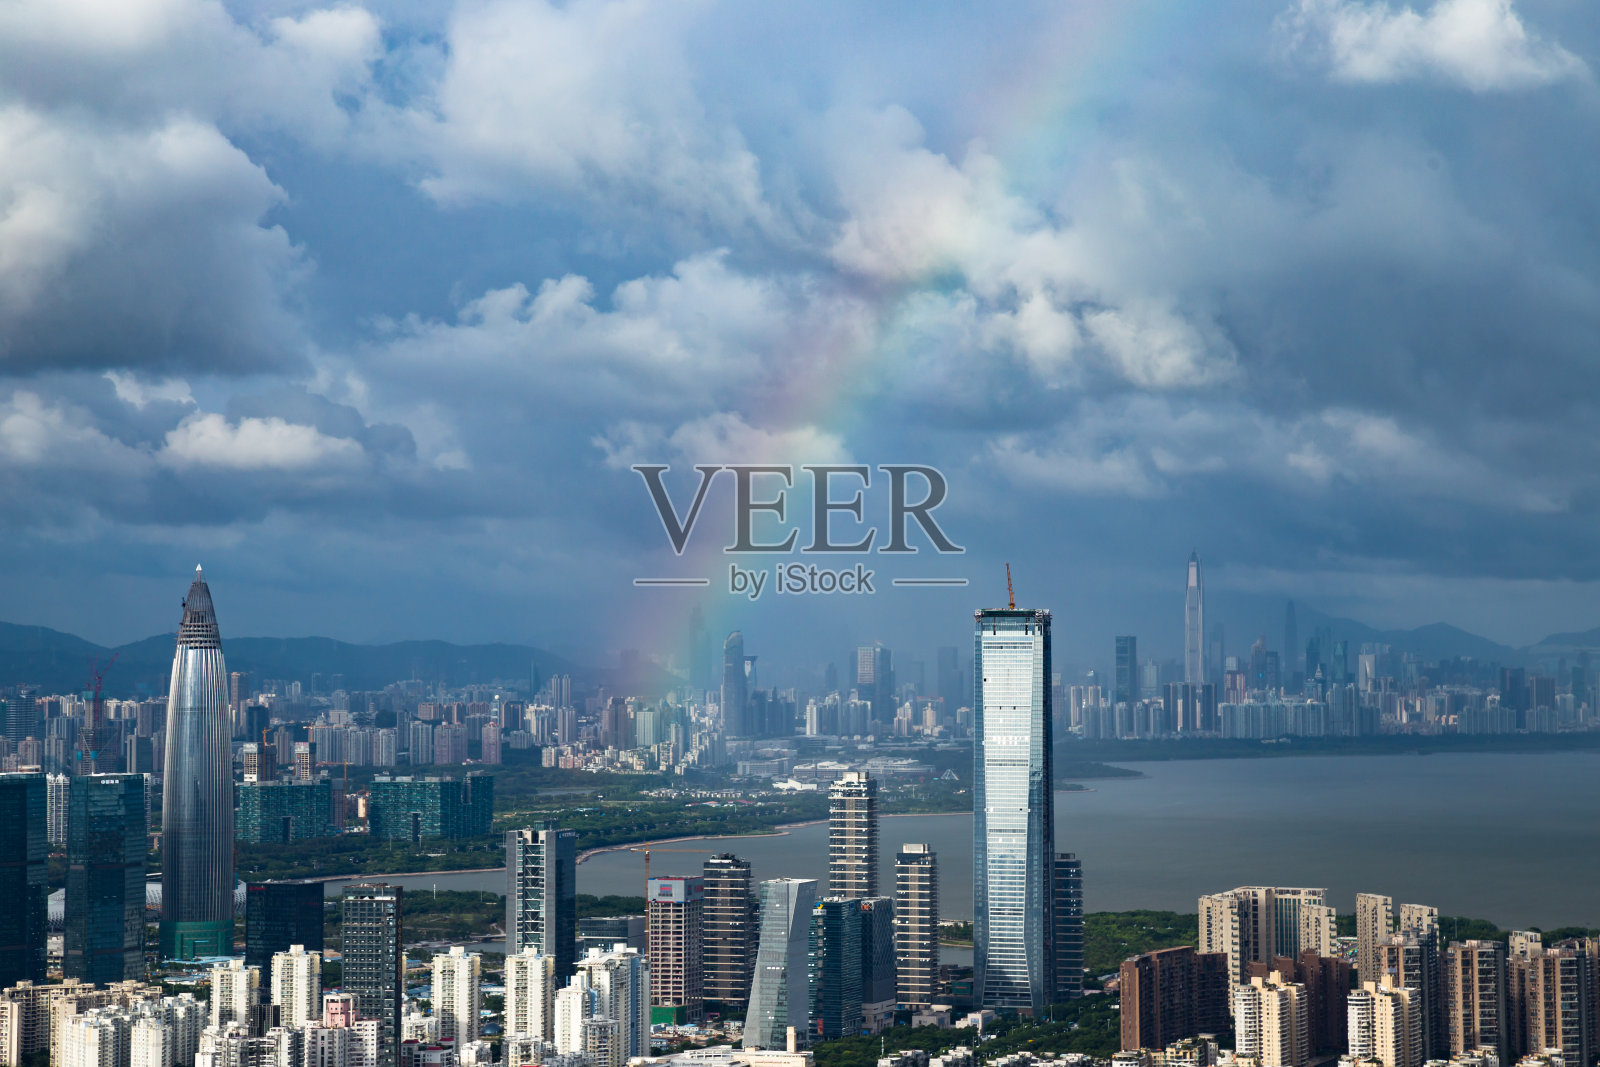 深圳的城市景观有彩虹照片摄影图片